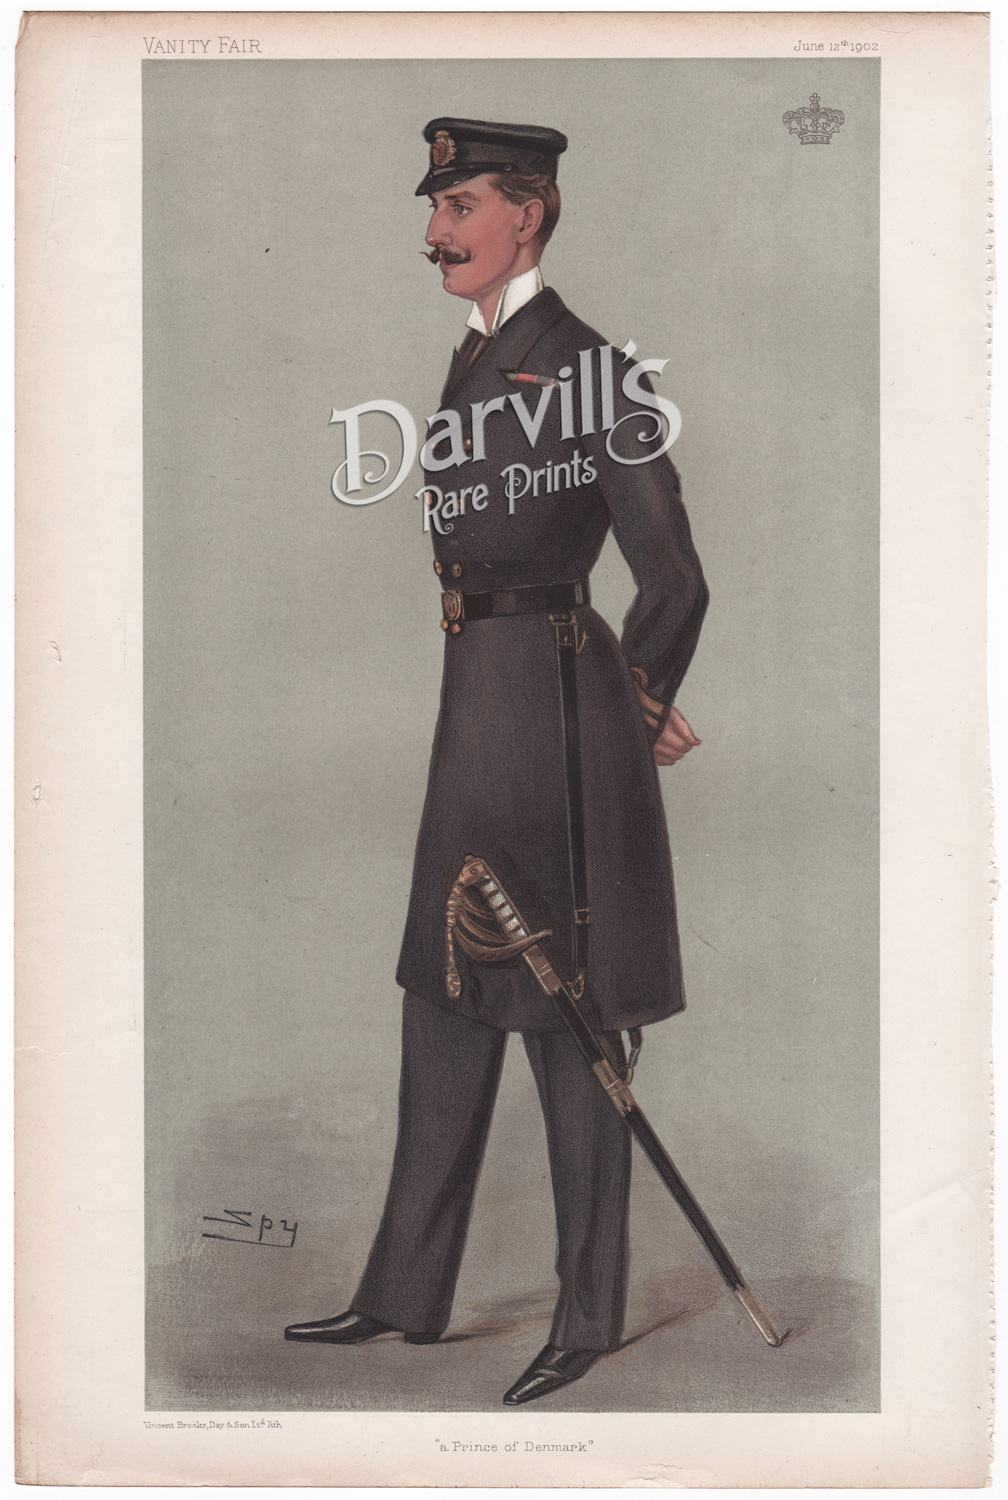 Prince Charles of Denmark June 12 1902